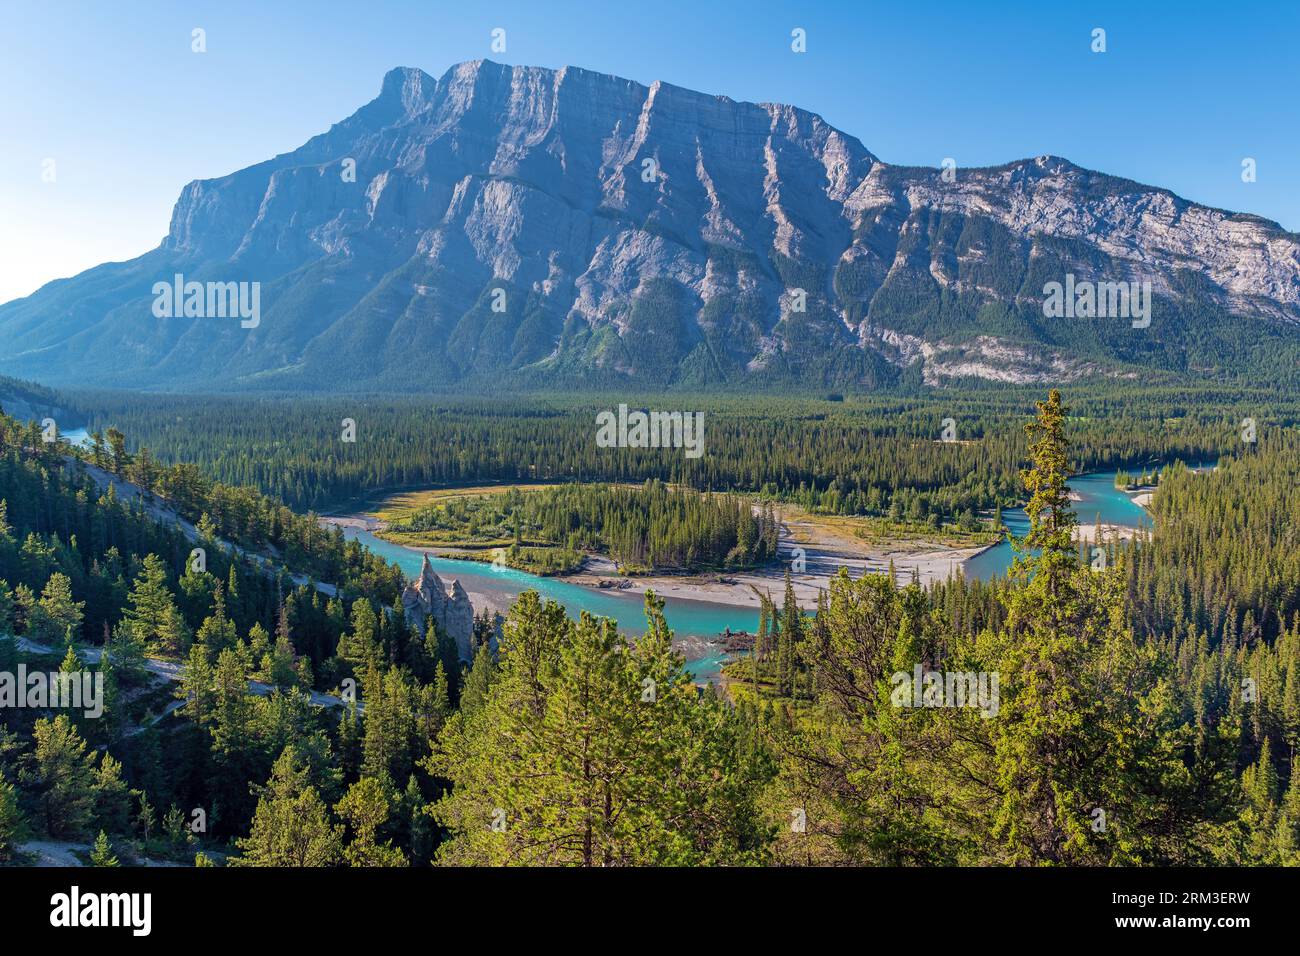 Paysage de la rivière Bow avec formation rocheuse hoodoo, parc national Banff, Alberta, Canada. Banque D'Images